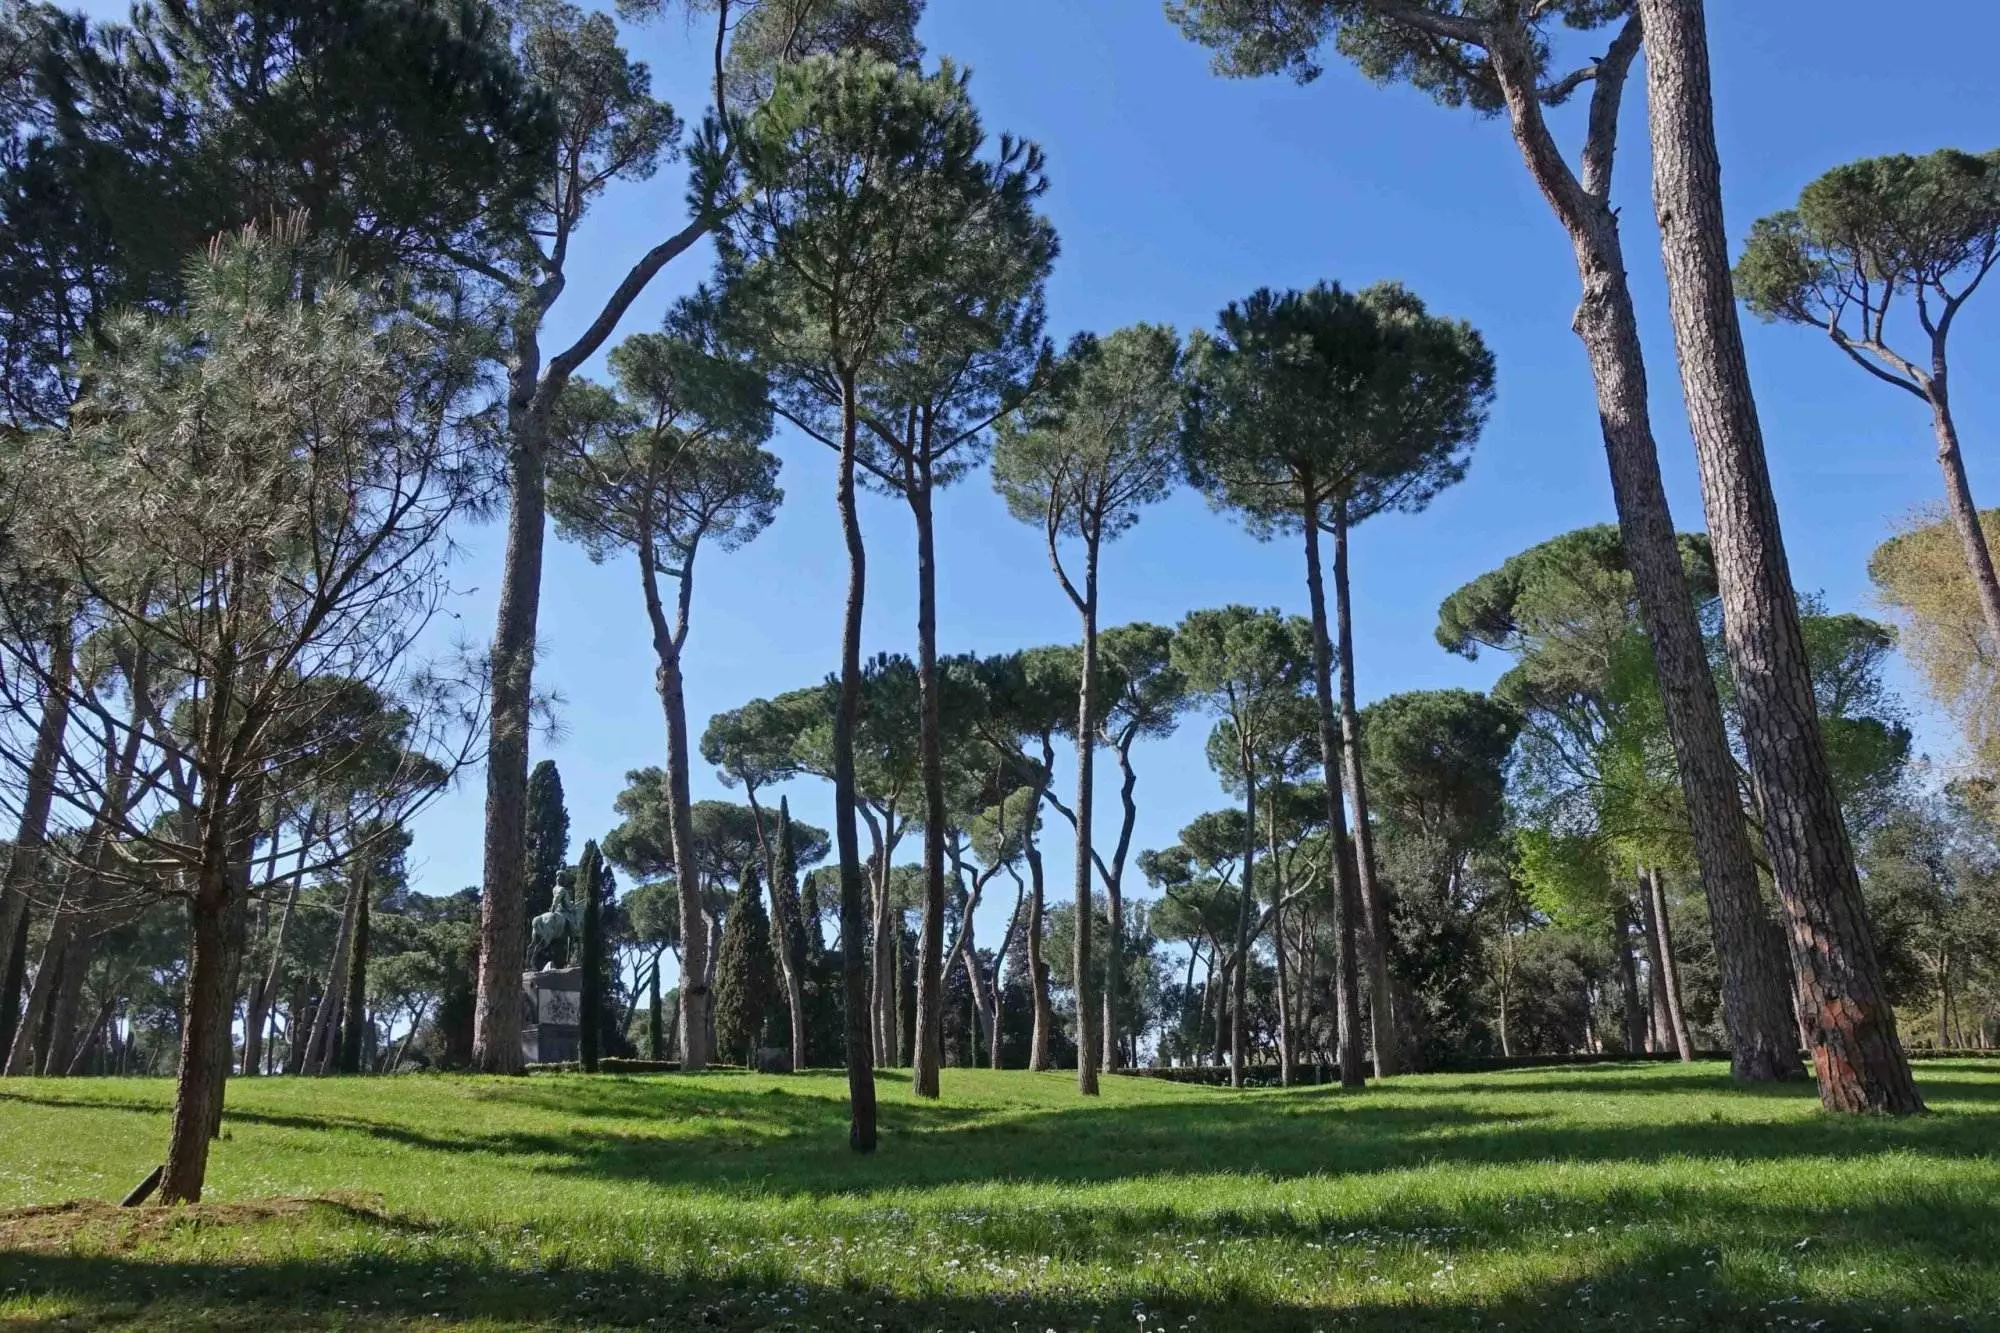 Pinien in einer grünen Oase mit blauem Himmel in Rom.